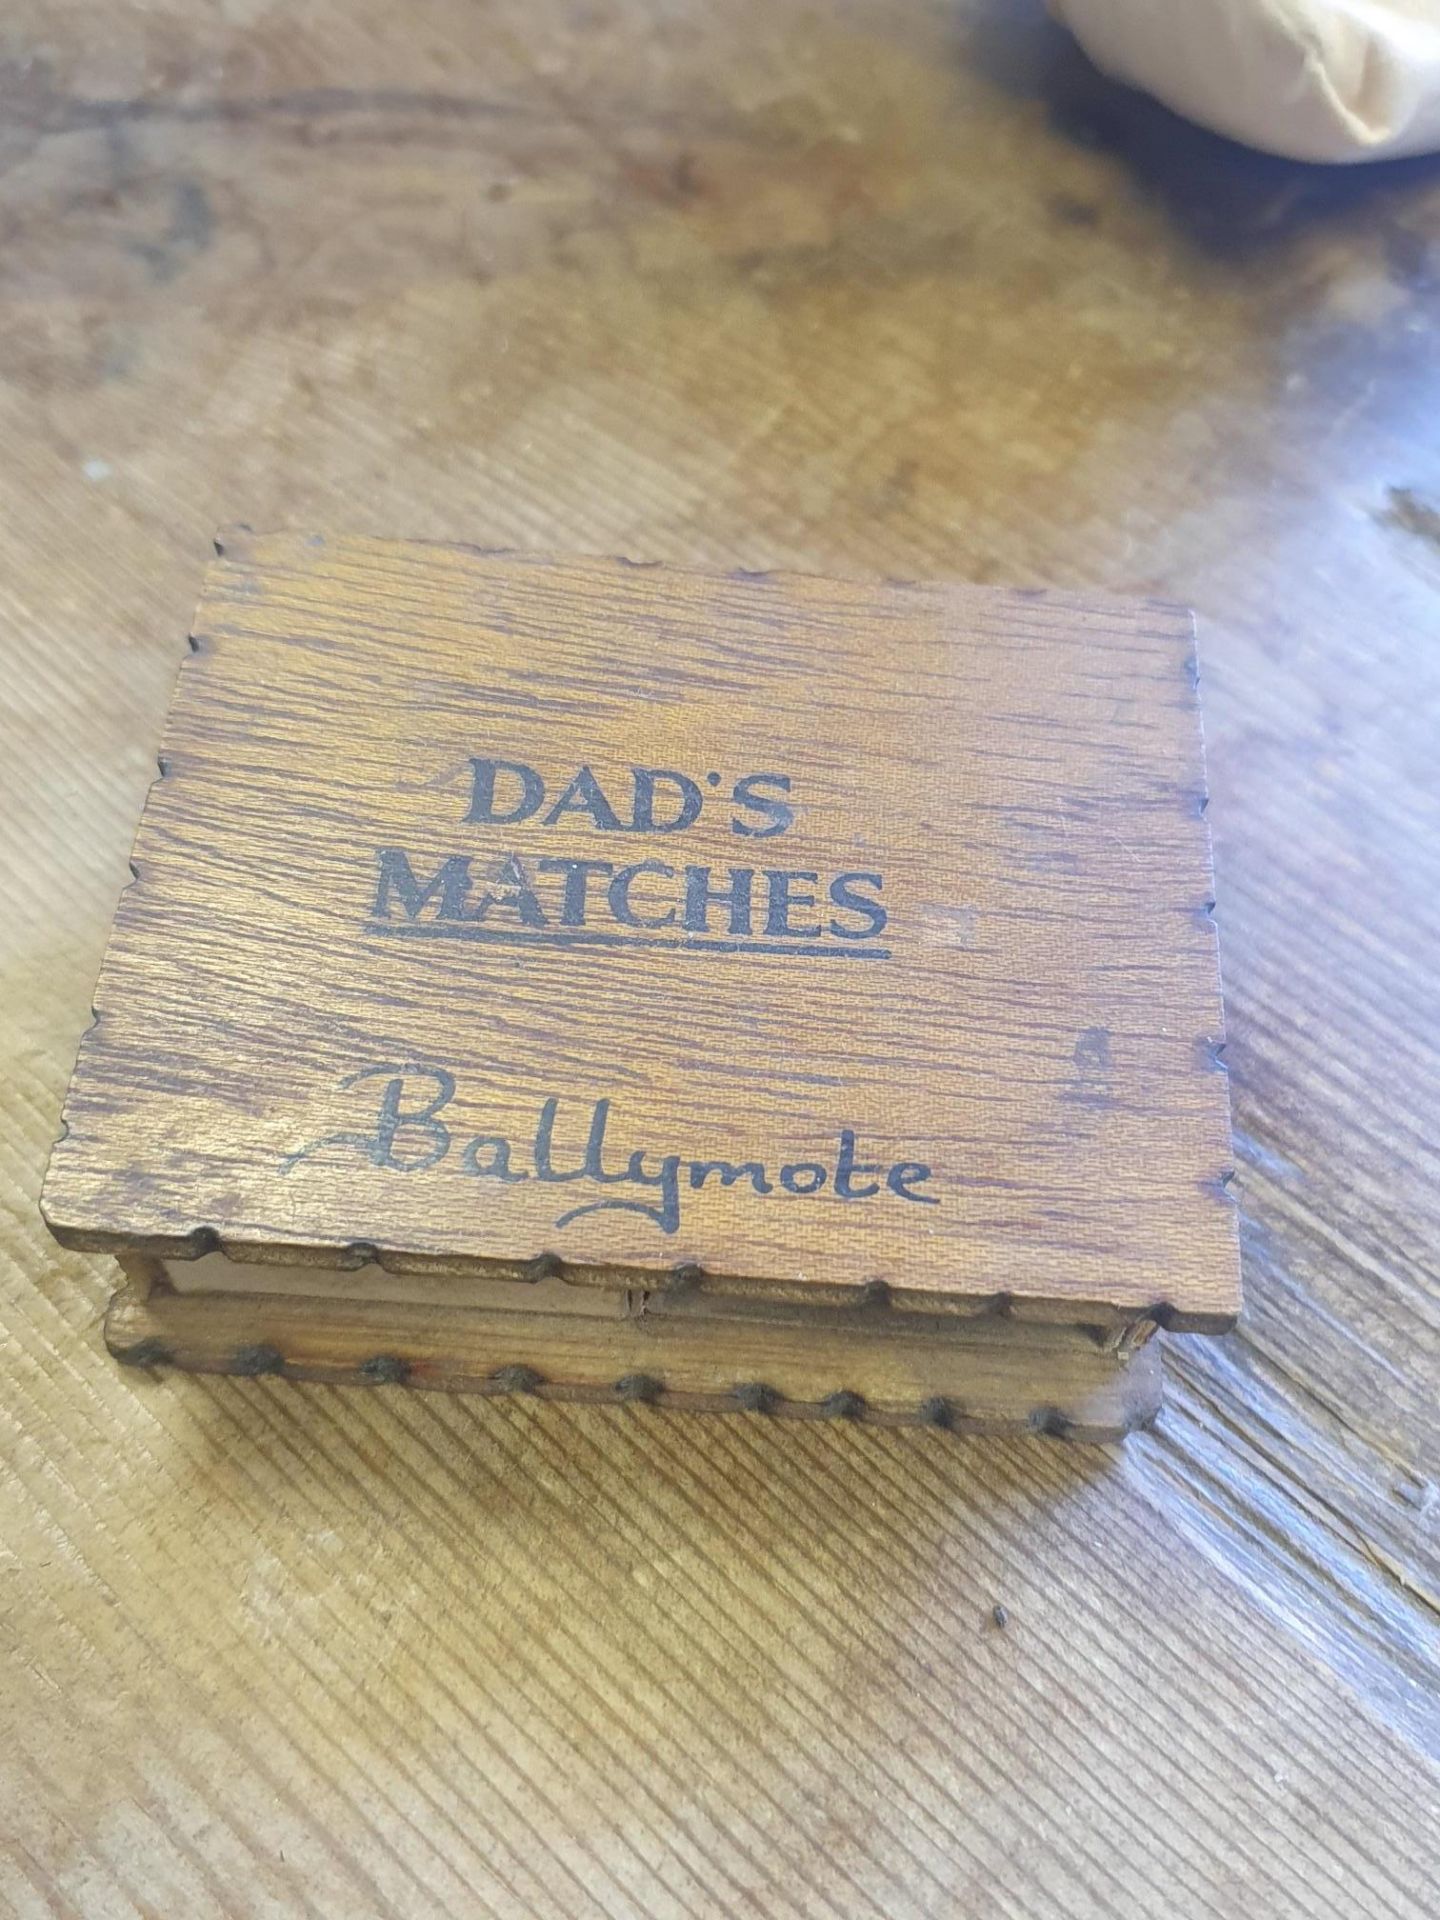 Wooden Dads Matches Storage Box